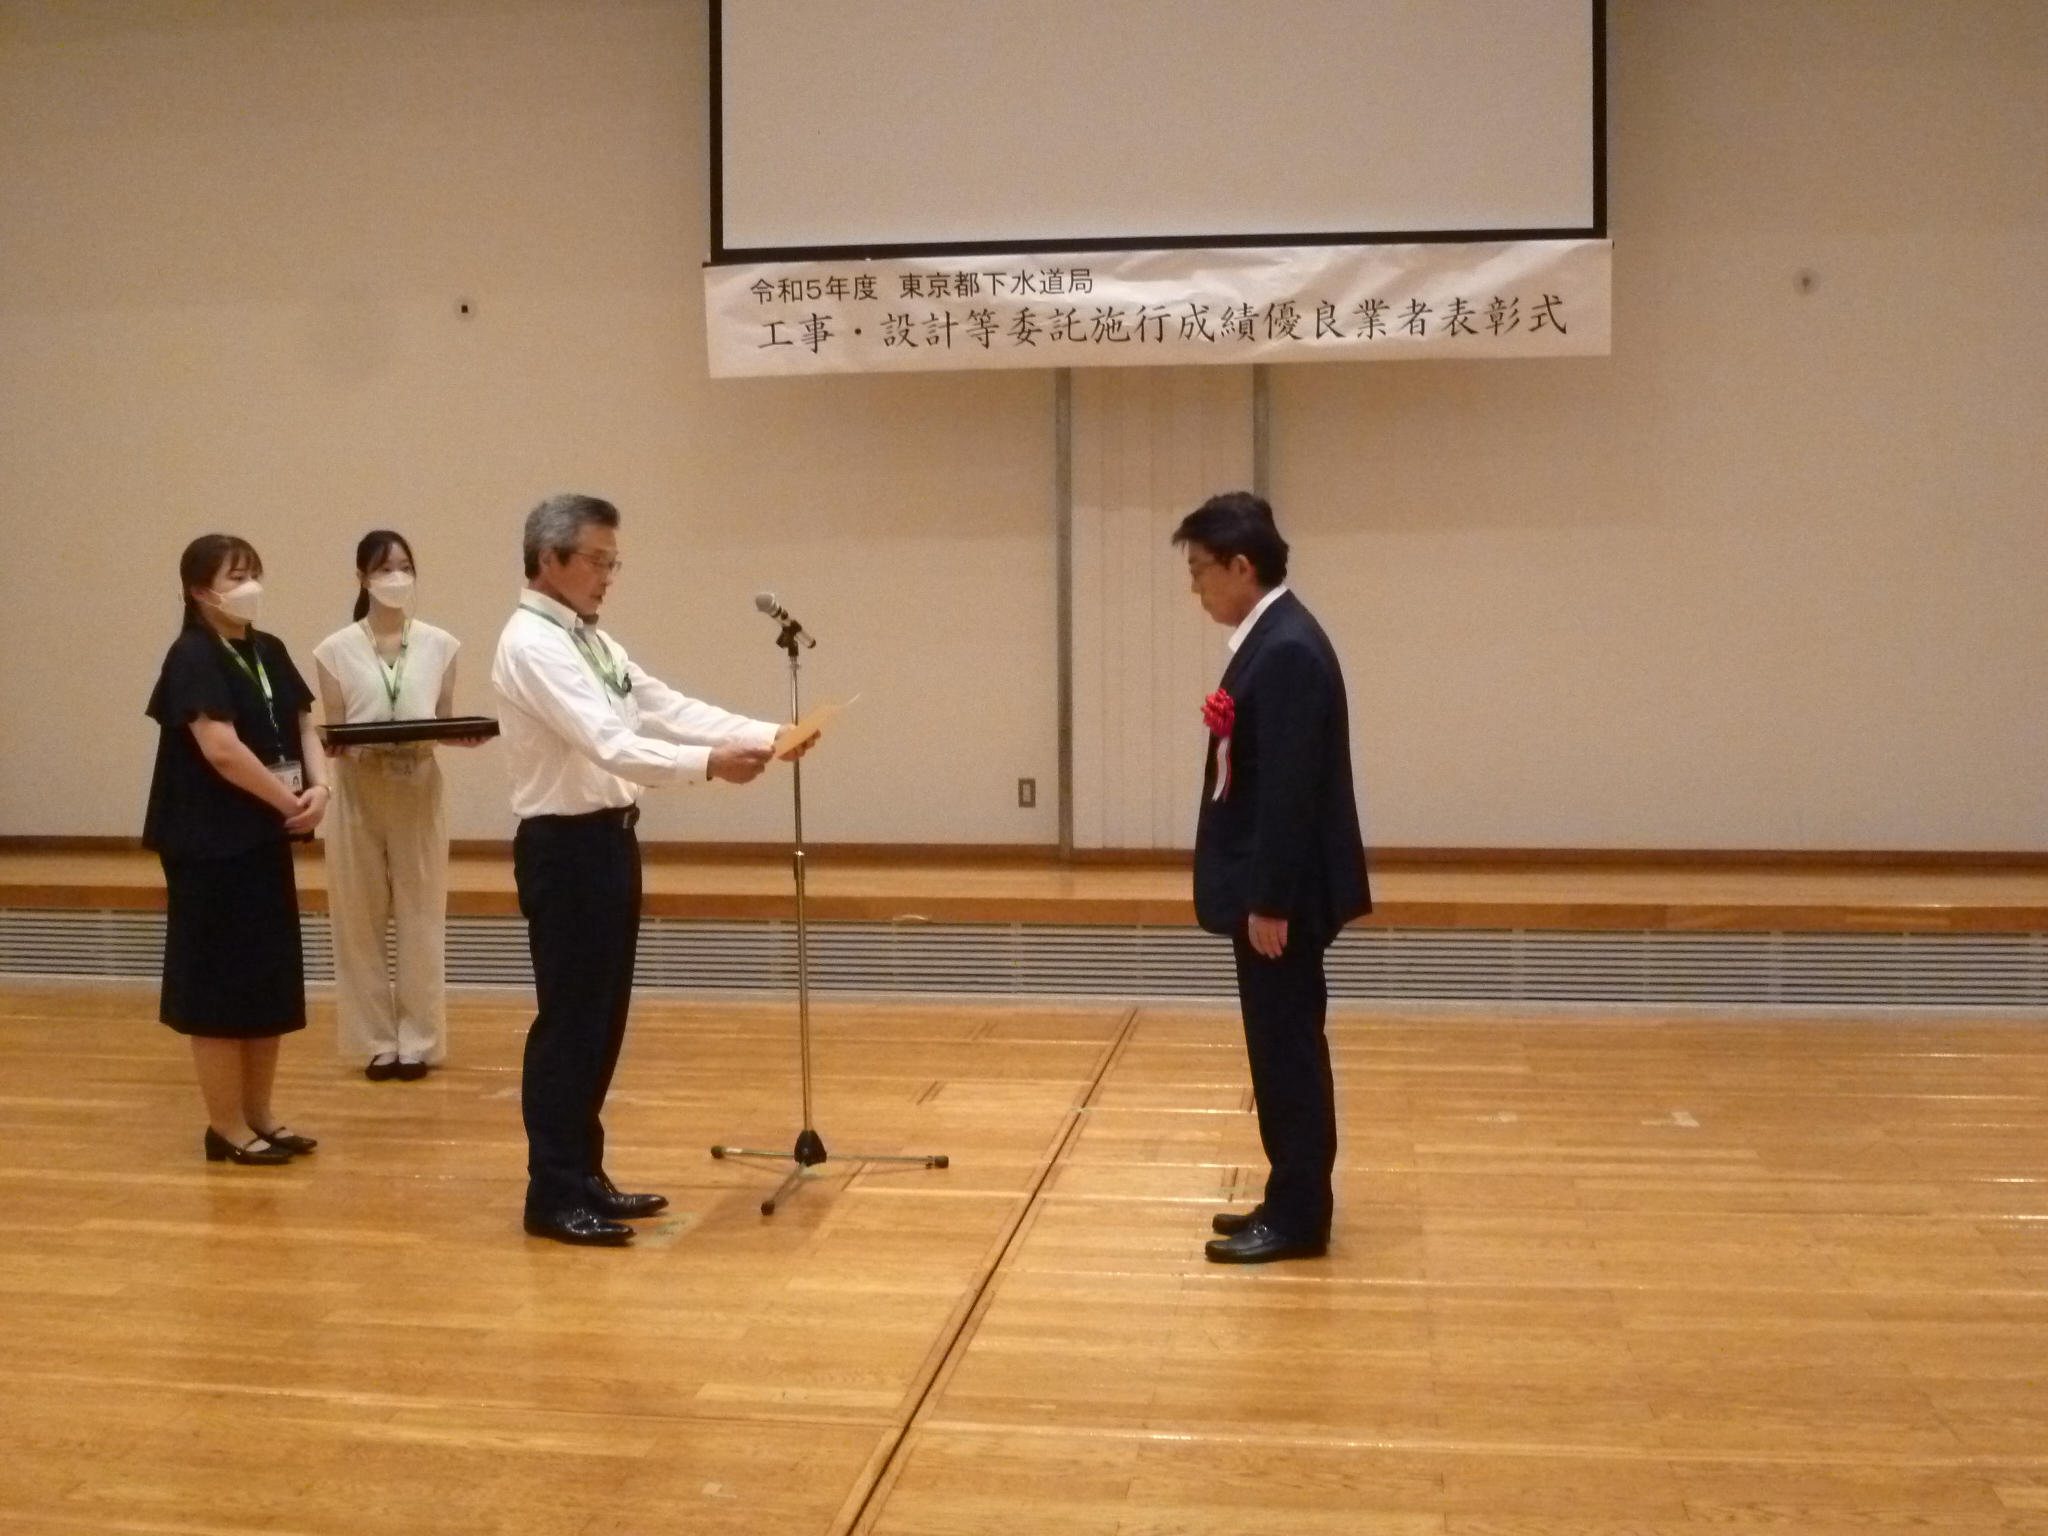 東京都下水道局より「工事施行成績優良業者」として表彰されました